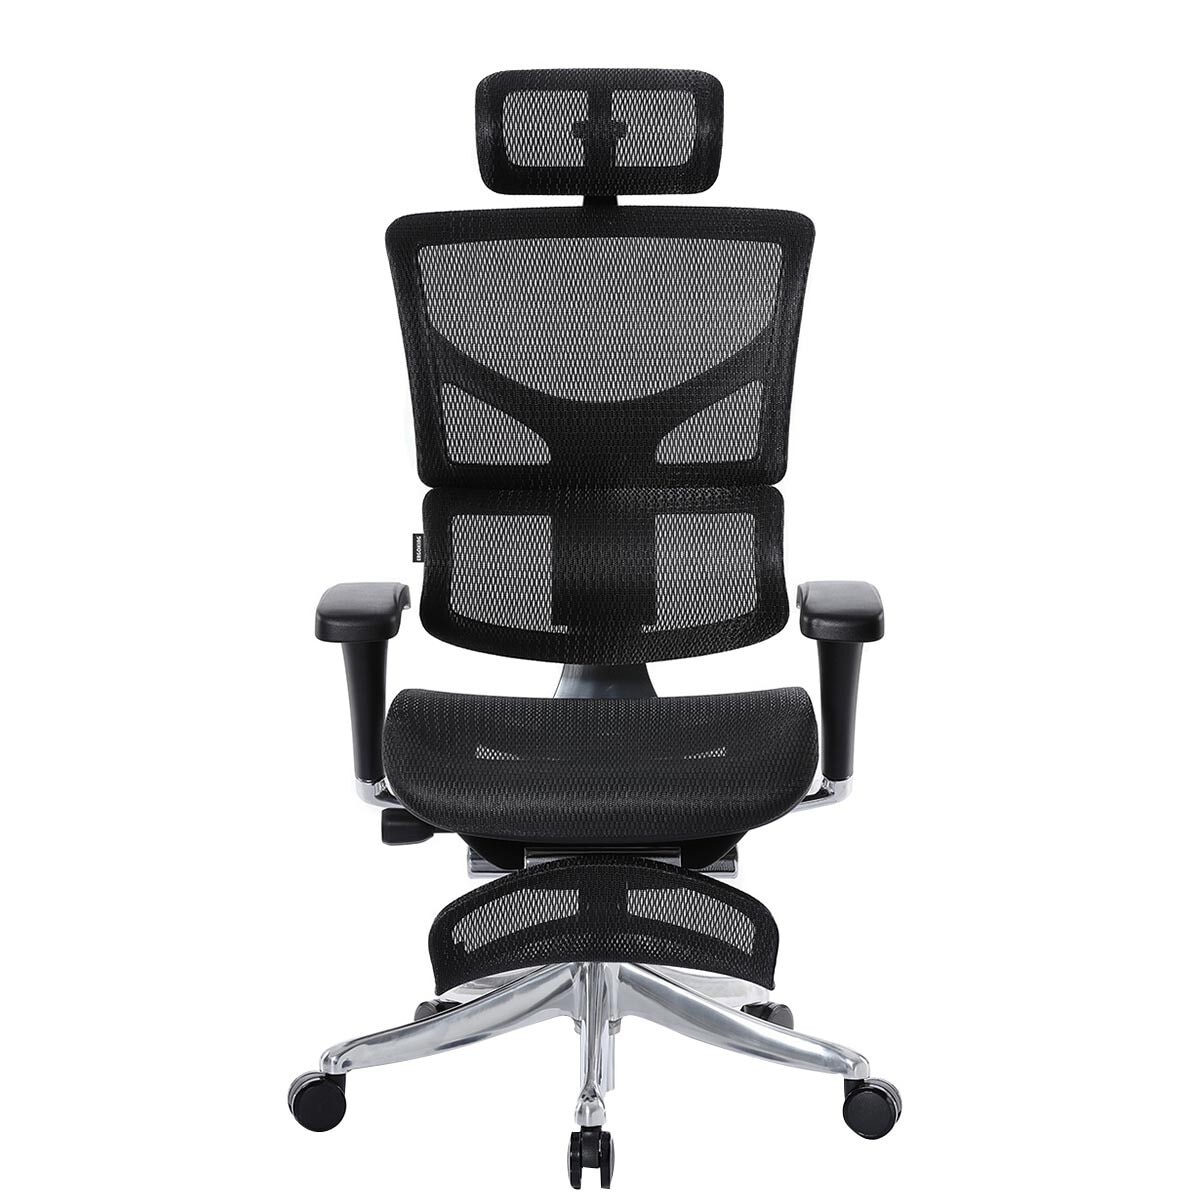 Ergoking 171-Pro 全功能網布人體工學椅附腳凳